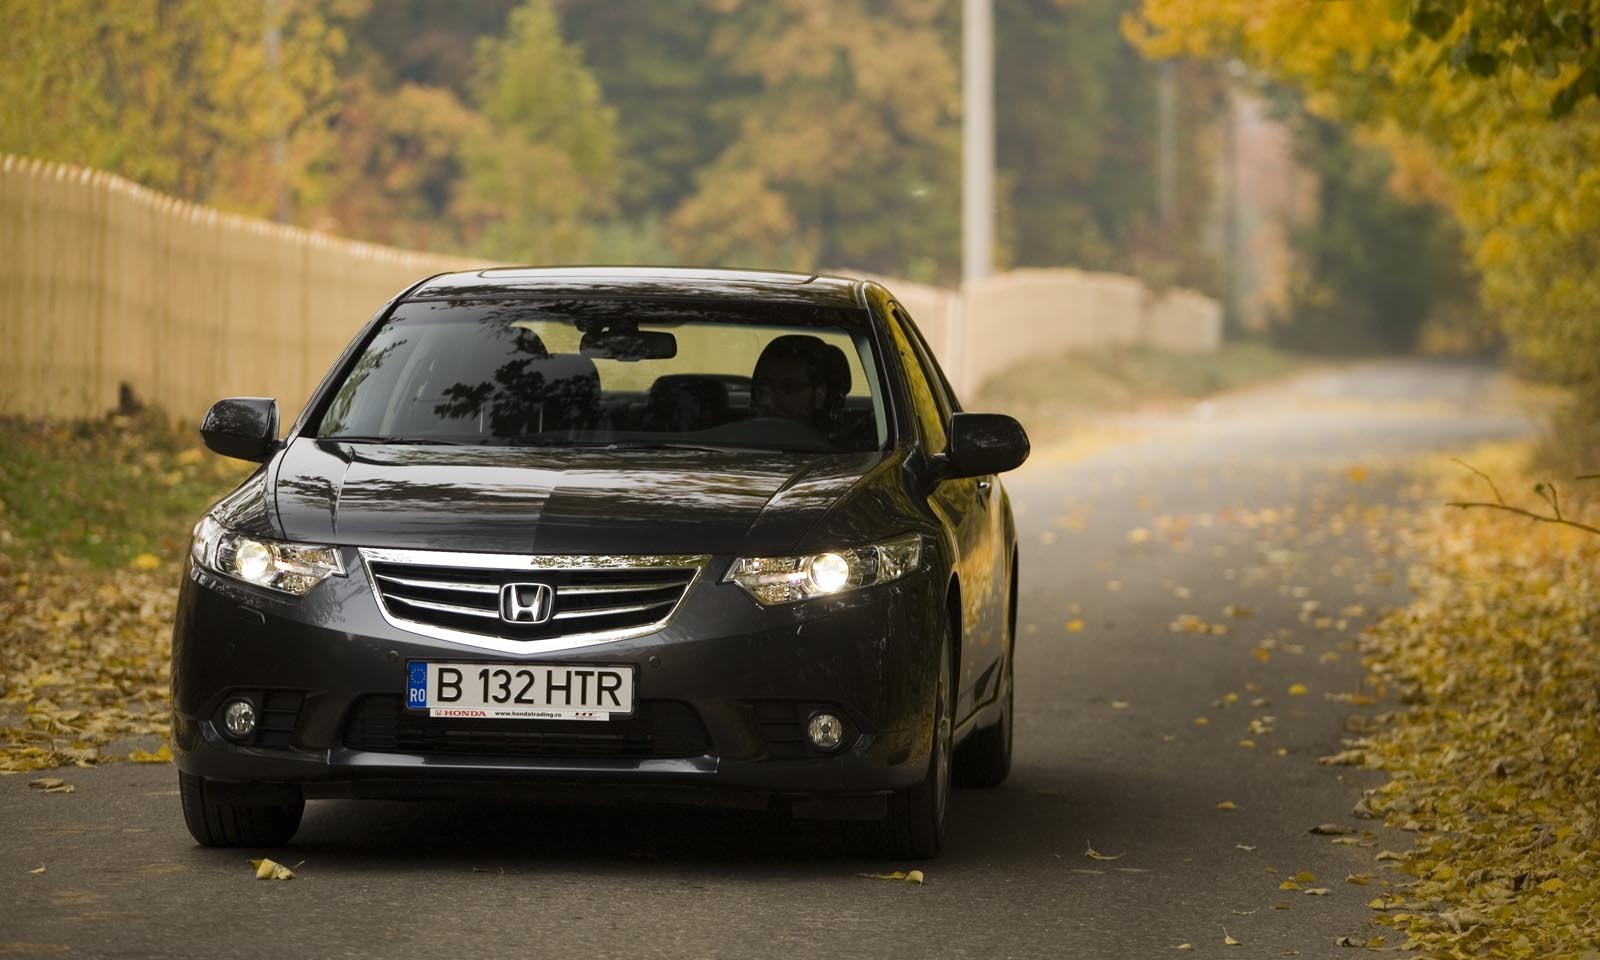 Faceliftul lui Honda Accord se rezuma la modificari subtile ale grilei si spoileului frontal